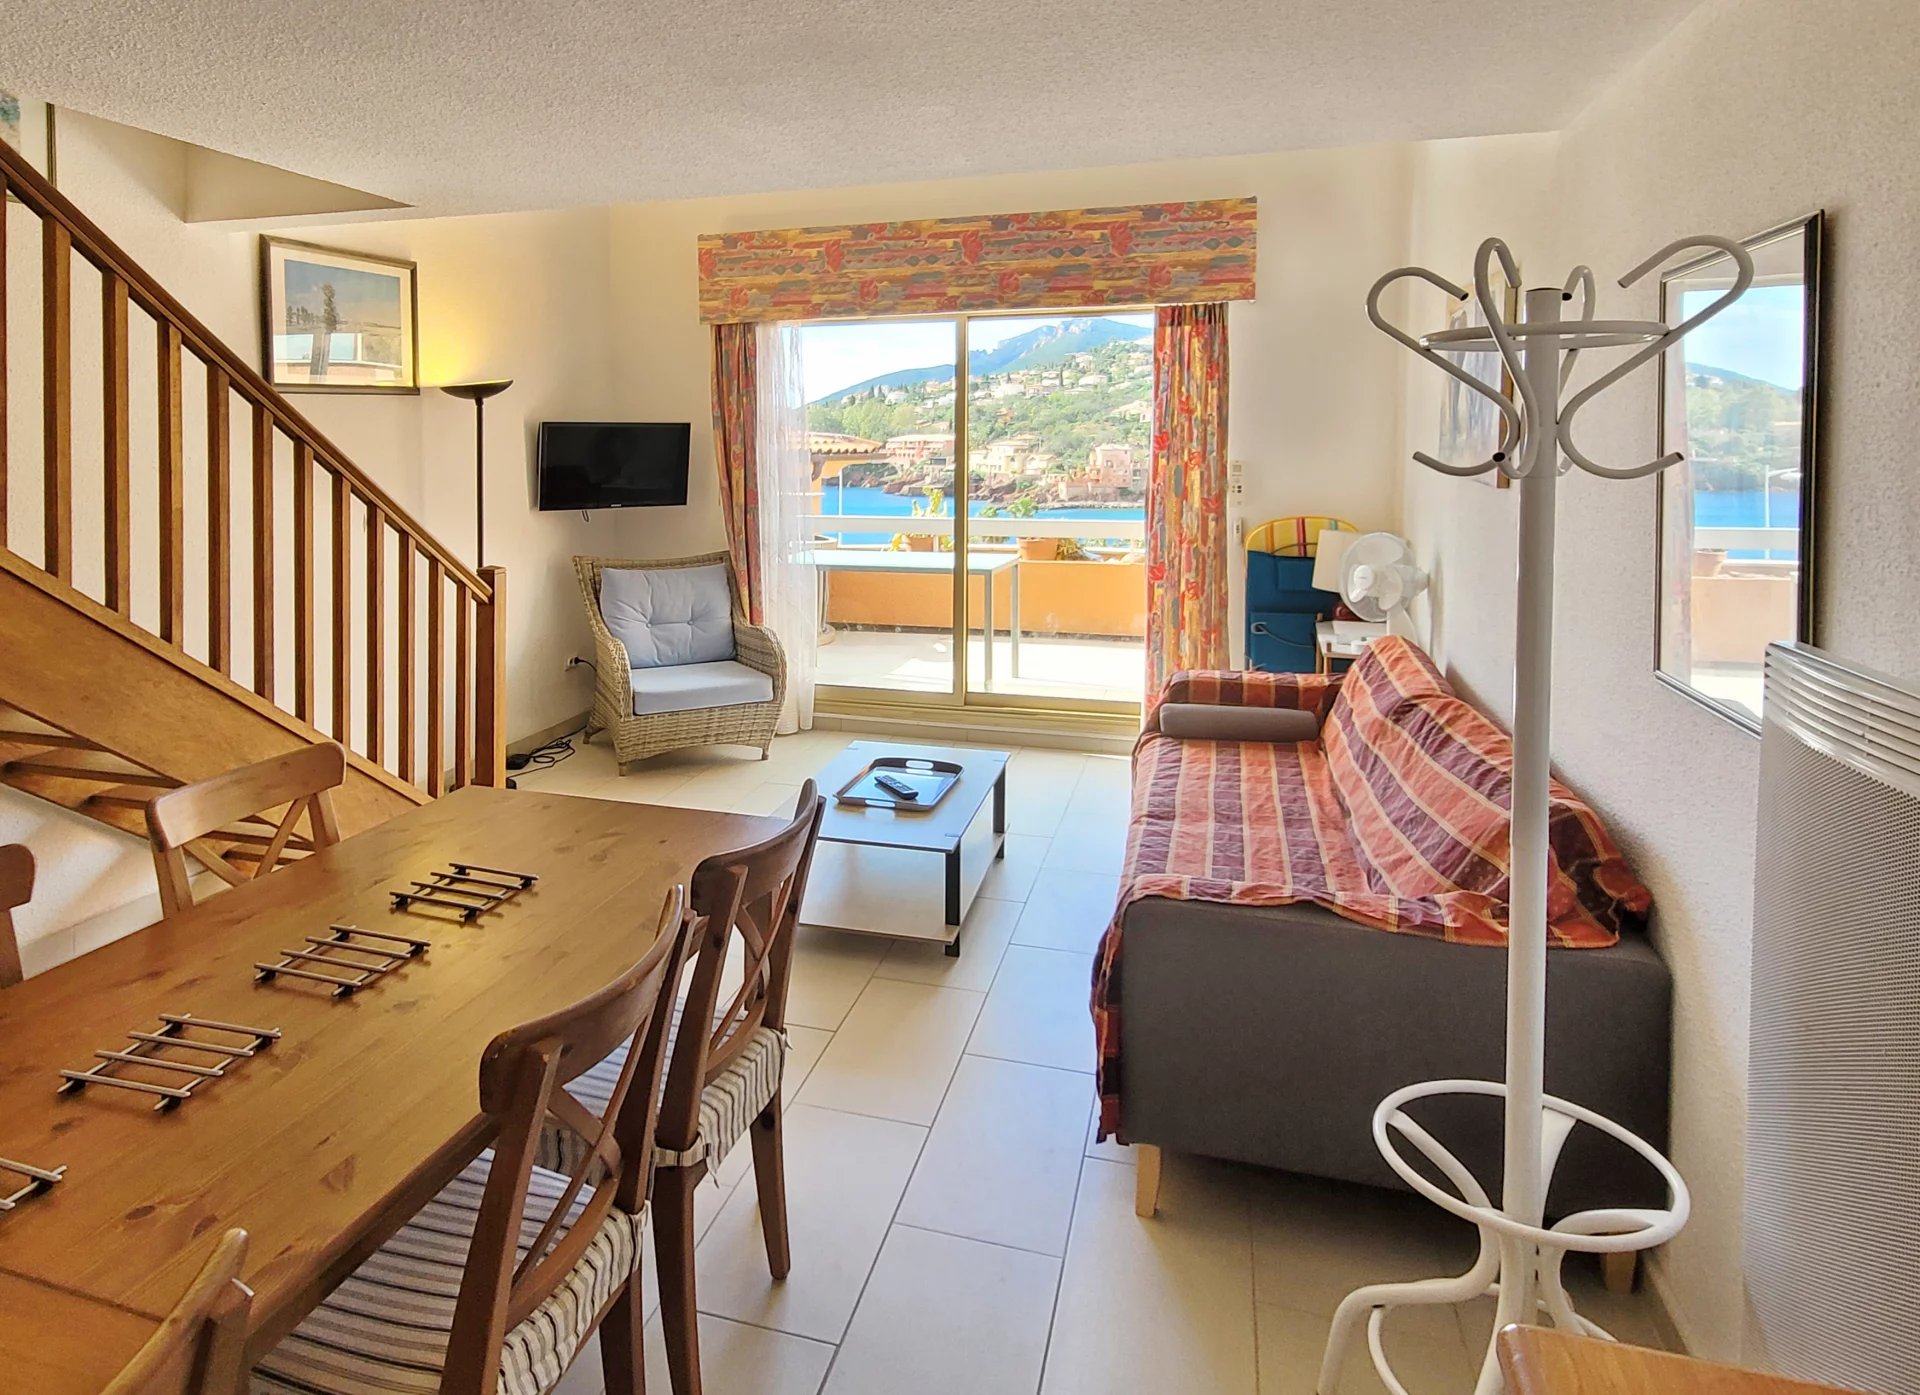 3 pièces duplex séjour terrasse vue mer 2 chambres cuisine  sdb/Wc proche de la plage !  * BM F9 *